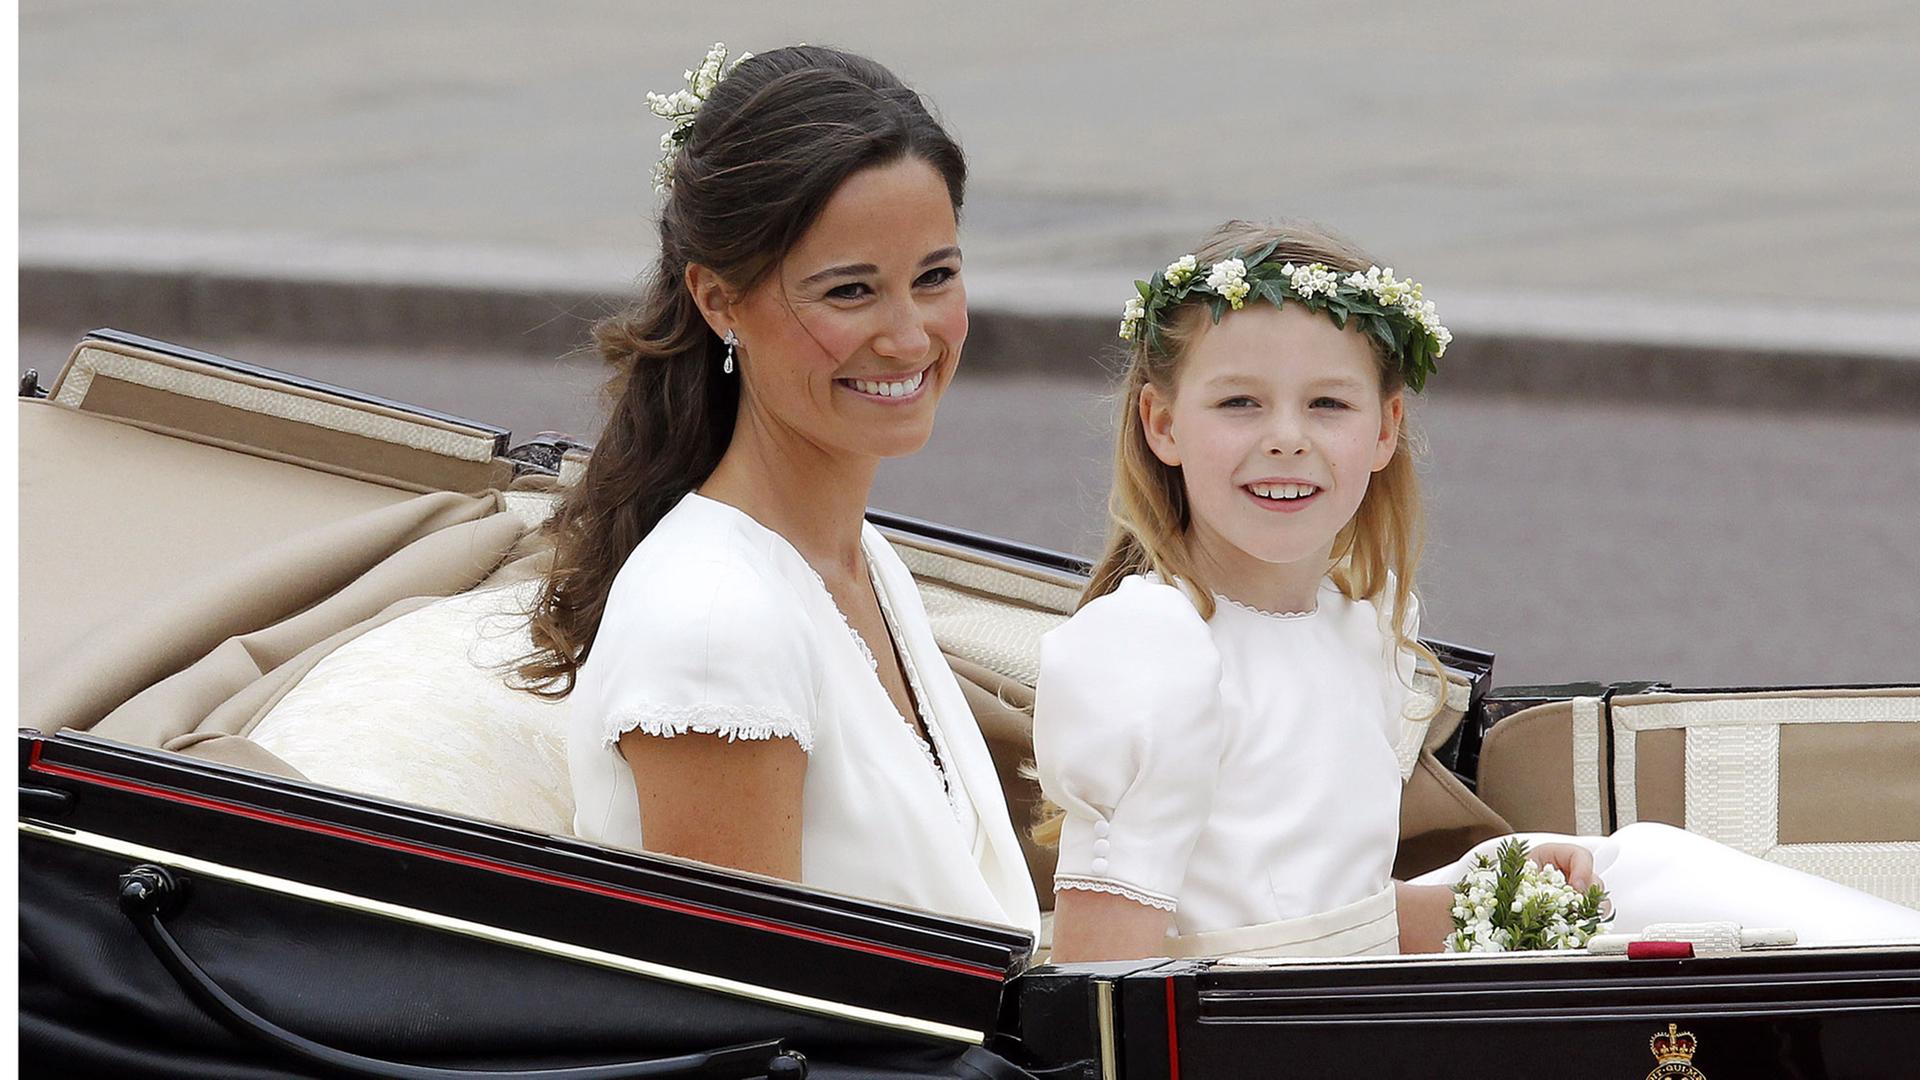 Zu sehen ist Pippa Middleton, die Schwester der britischen Herzogin Kate, nach deren Hochzeit am 29. April 2011. Pippa sitzt in einer offenen Kutsche, einem Landauer. Begleitet wird sie von einem Kind, dem Blumenmädchen Margarita Armstron-Jones. Sie sind auf dem Weg zum Buckingham Palace in London.